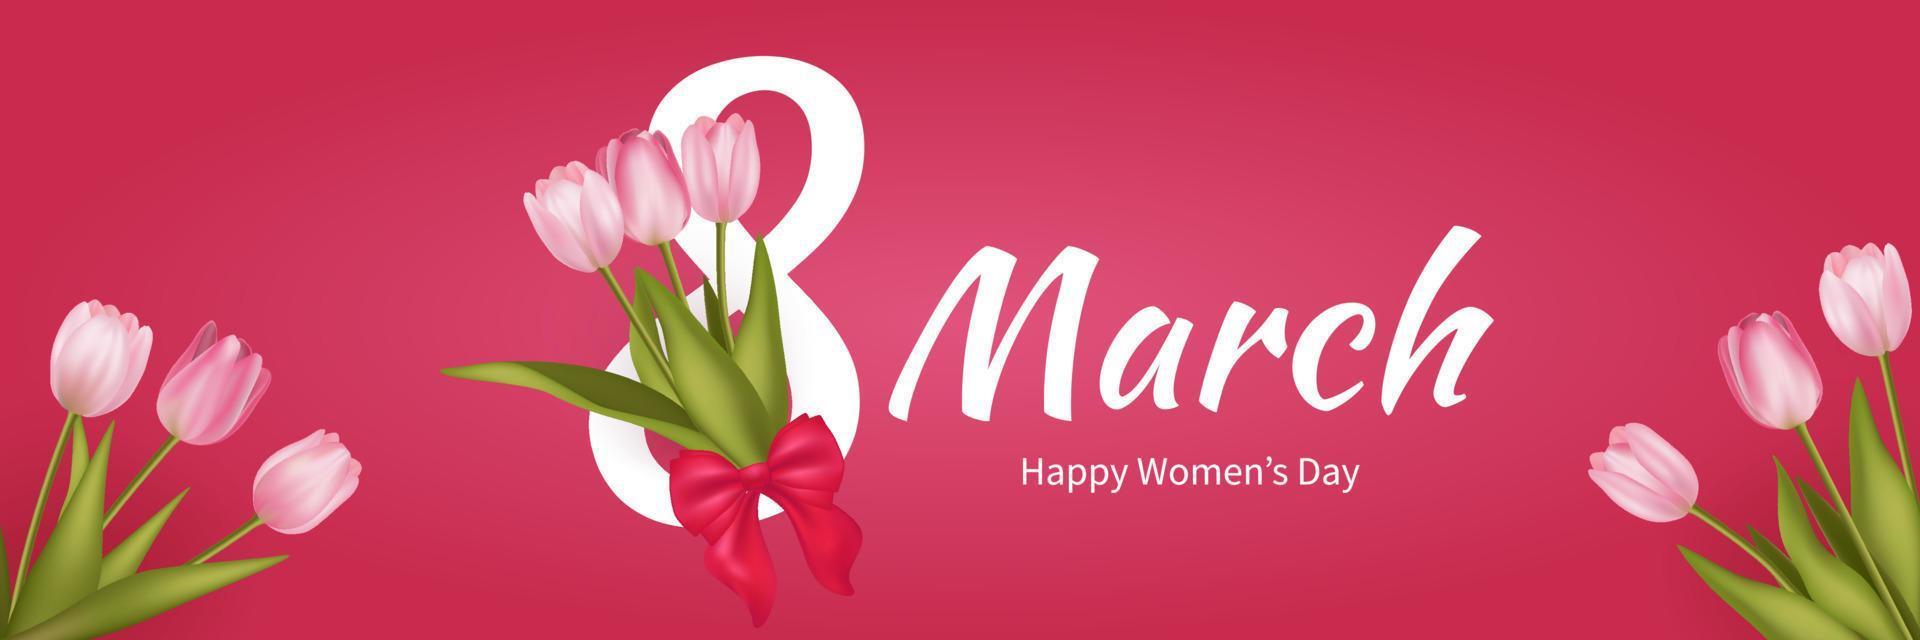 Banner de saudação de 8 de março com fundo de buquê de flores de tulipa rosa realista. cartaz, folheto, cartão de felicitações, ilustração vetorial de cabeçalho do site. modelo para publicidade, web, mídia social rosa vermelha. vetor